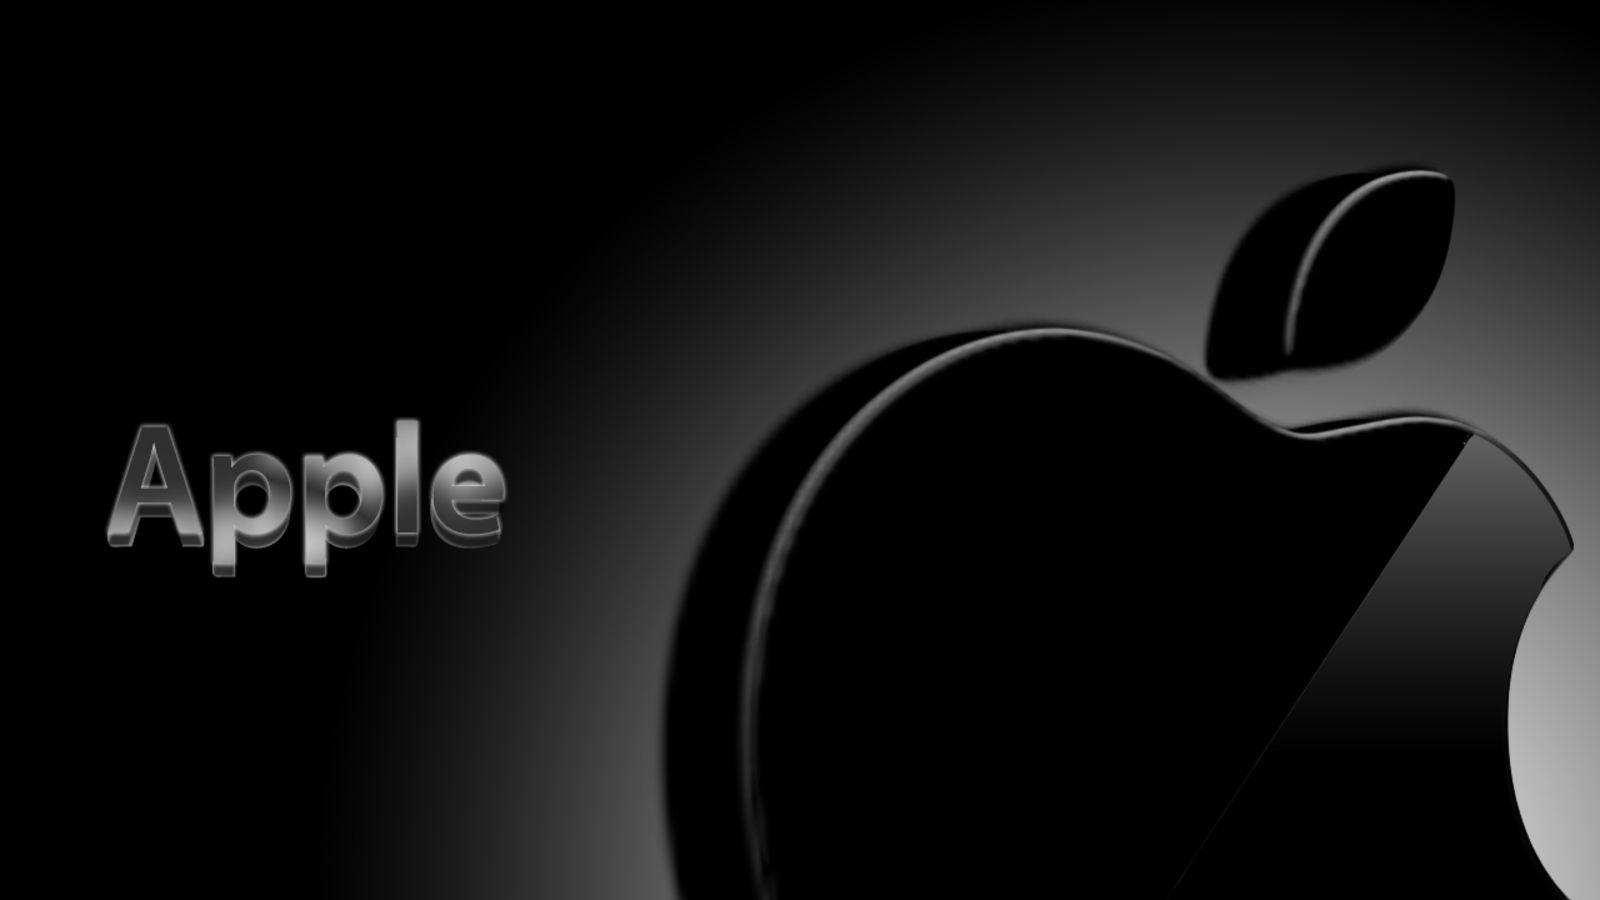 All Black Apple Logo - Black Apple Logo Wallpapers #6985558